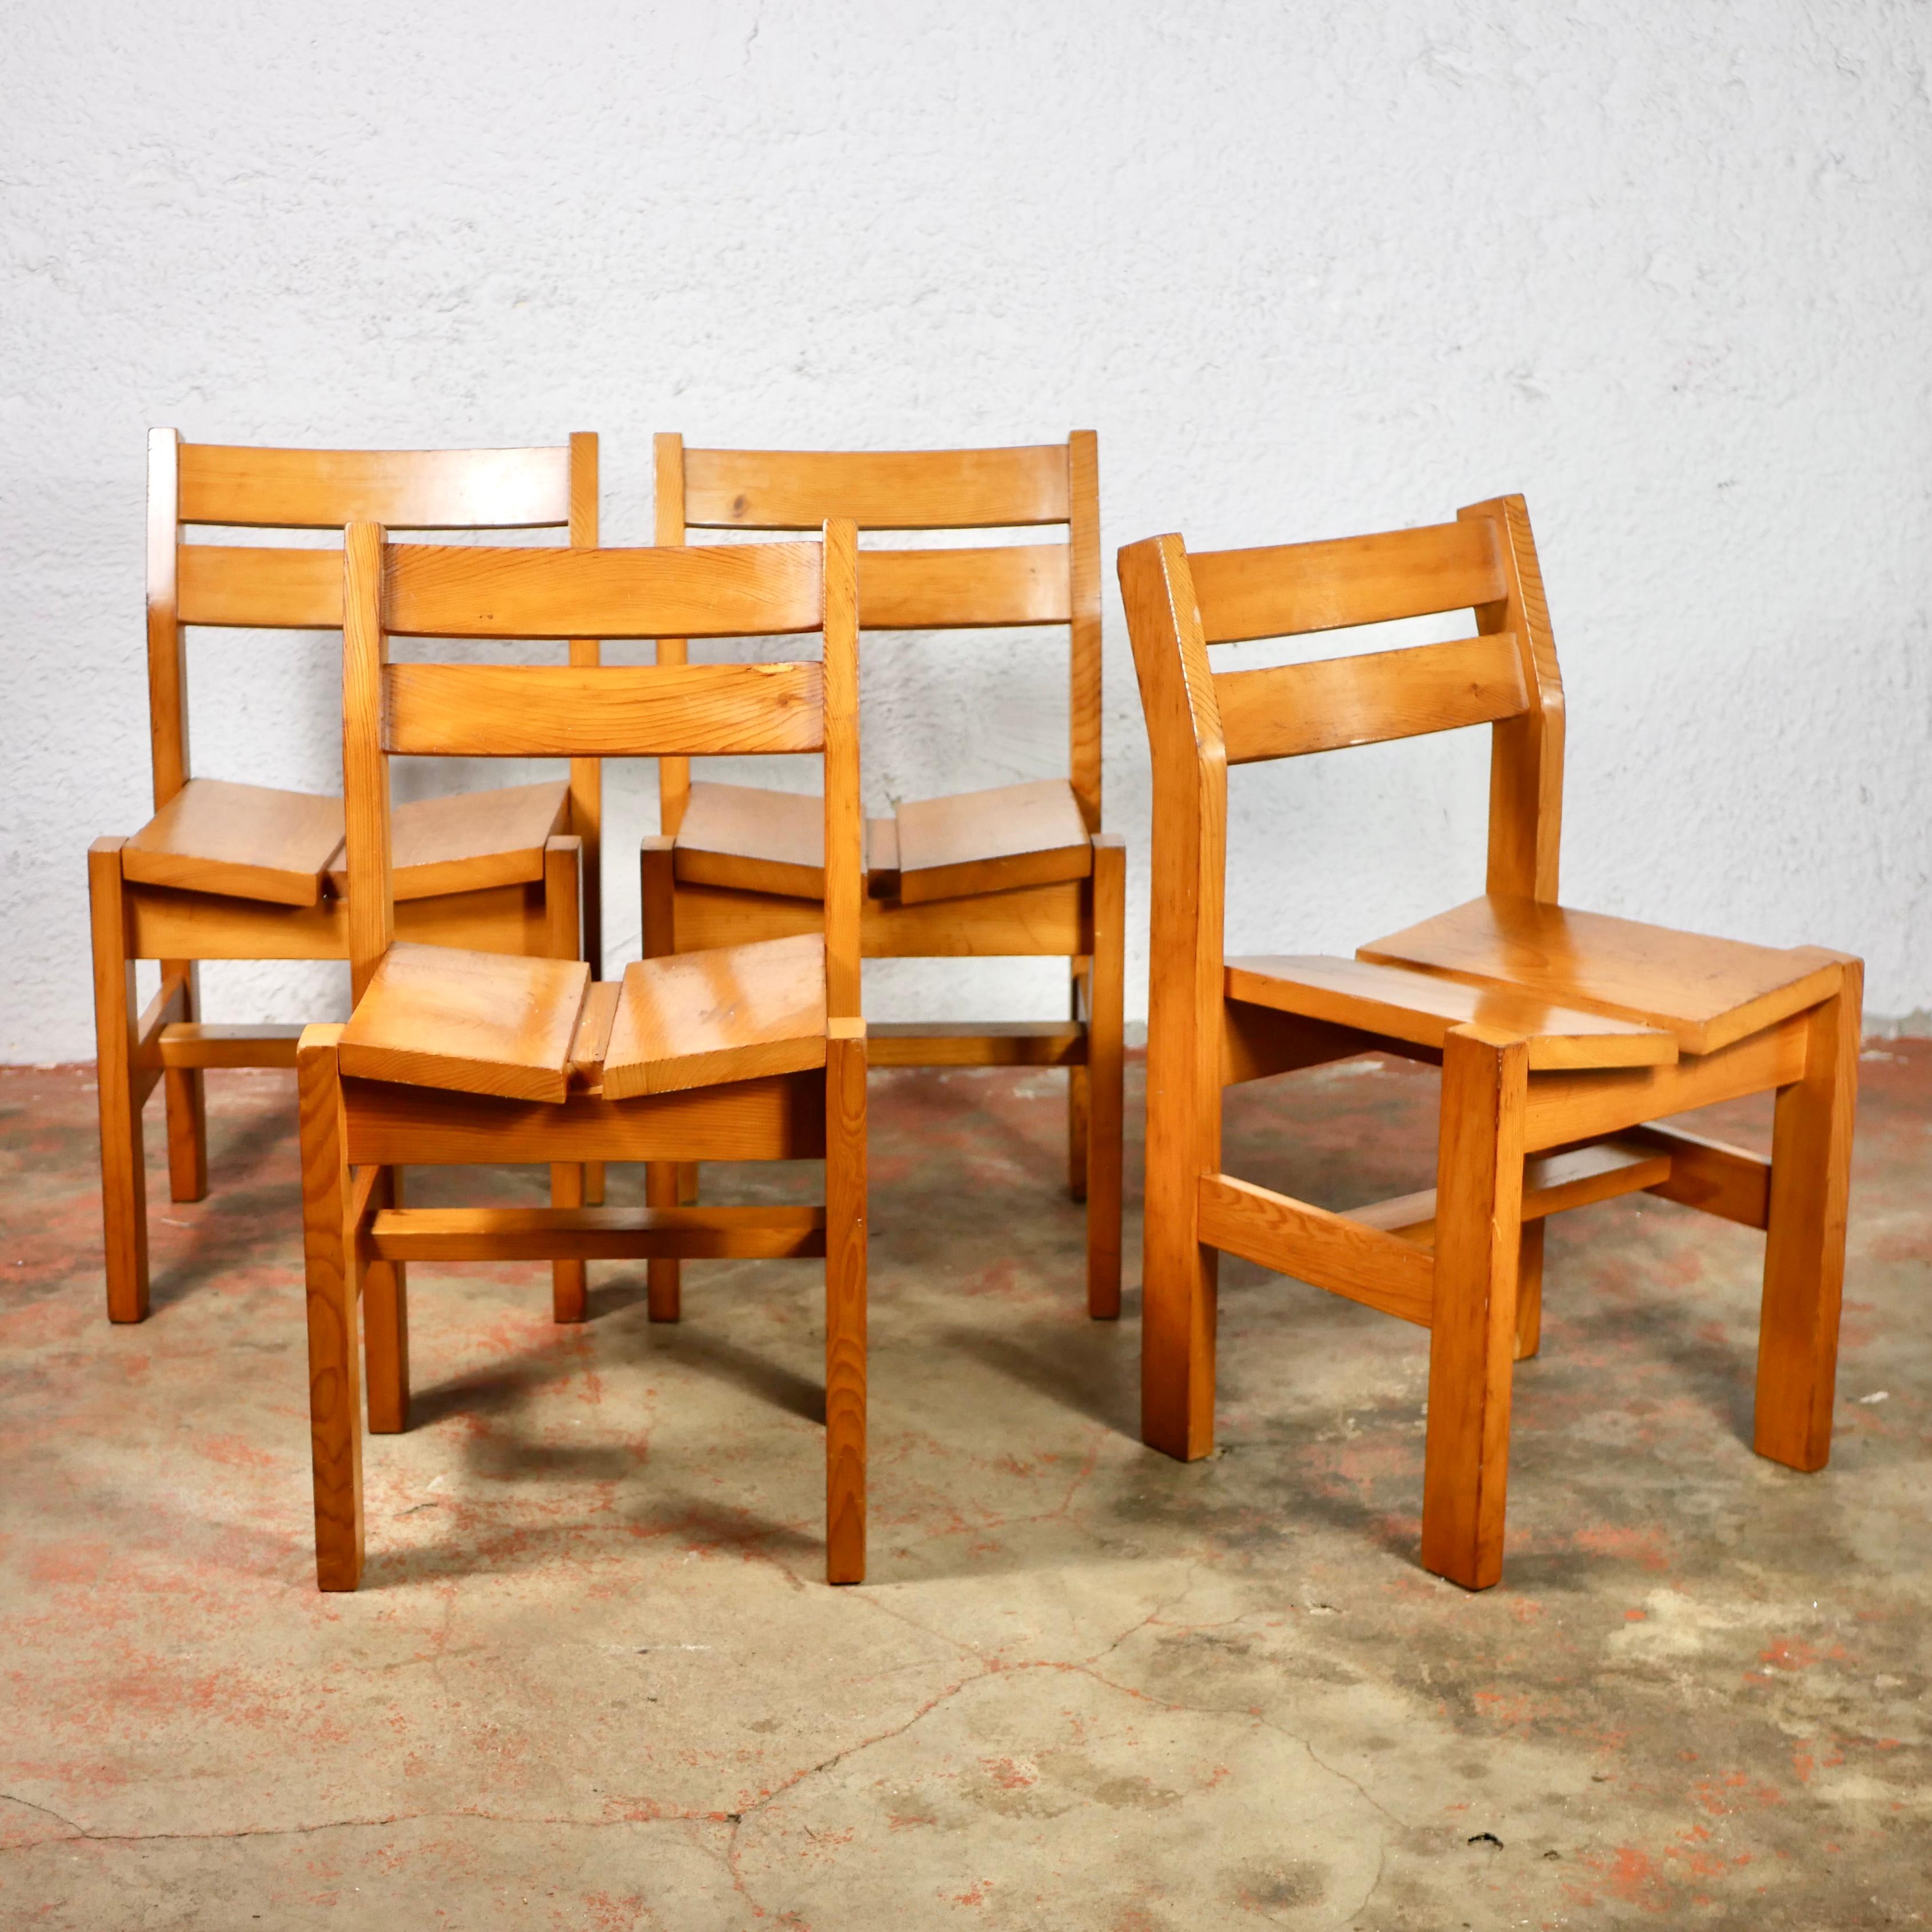 Ensemble de 4 chaises en pin de la Maison Regain, fabriquées en France dans les années 1960-70, qui ont fait partie de la sélection de meubles de Charlotte Perriand pour la résidence 